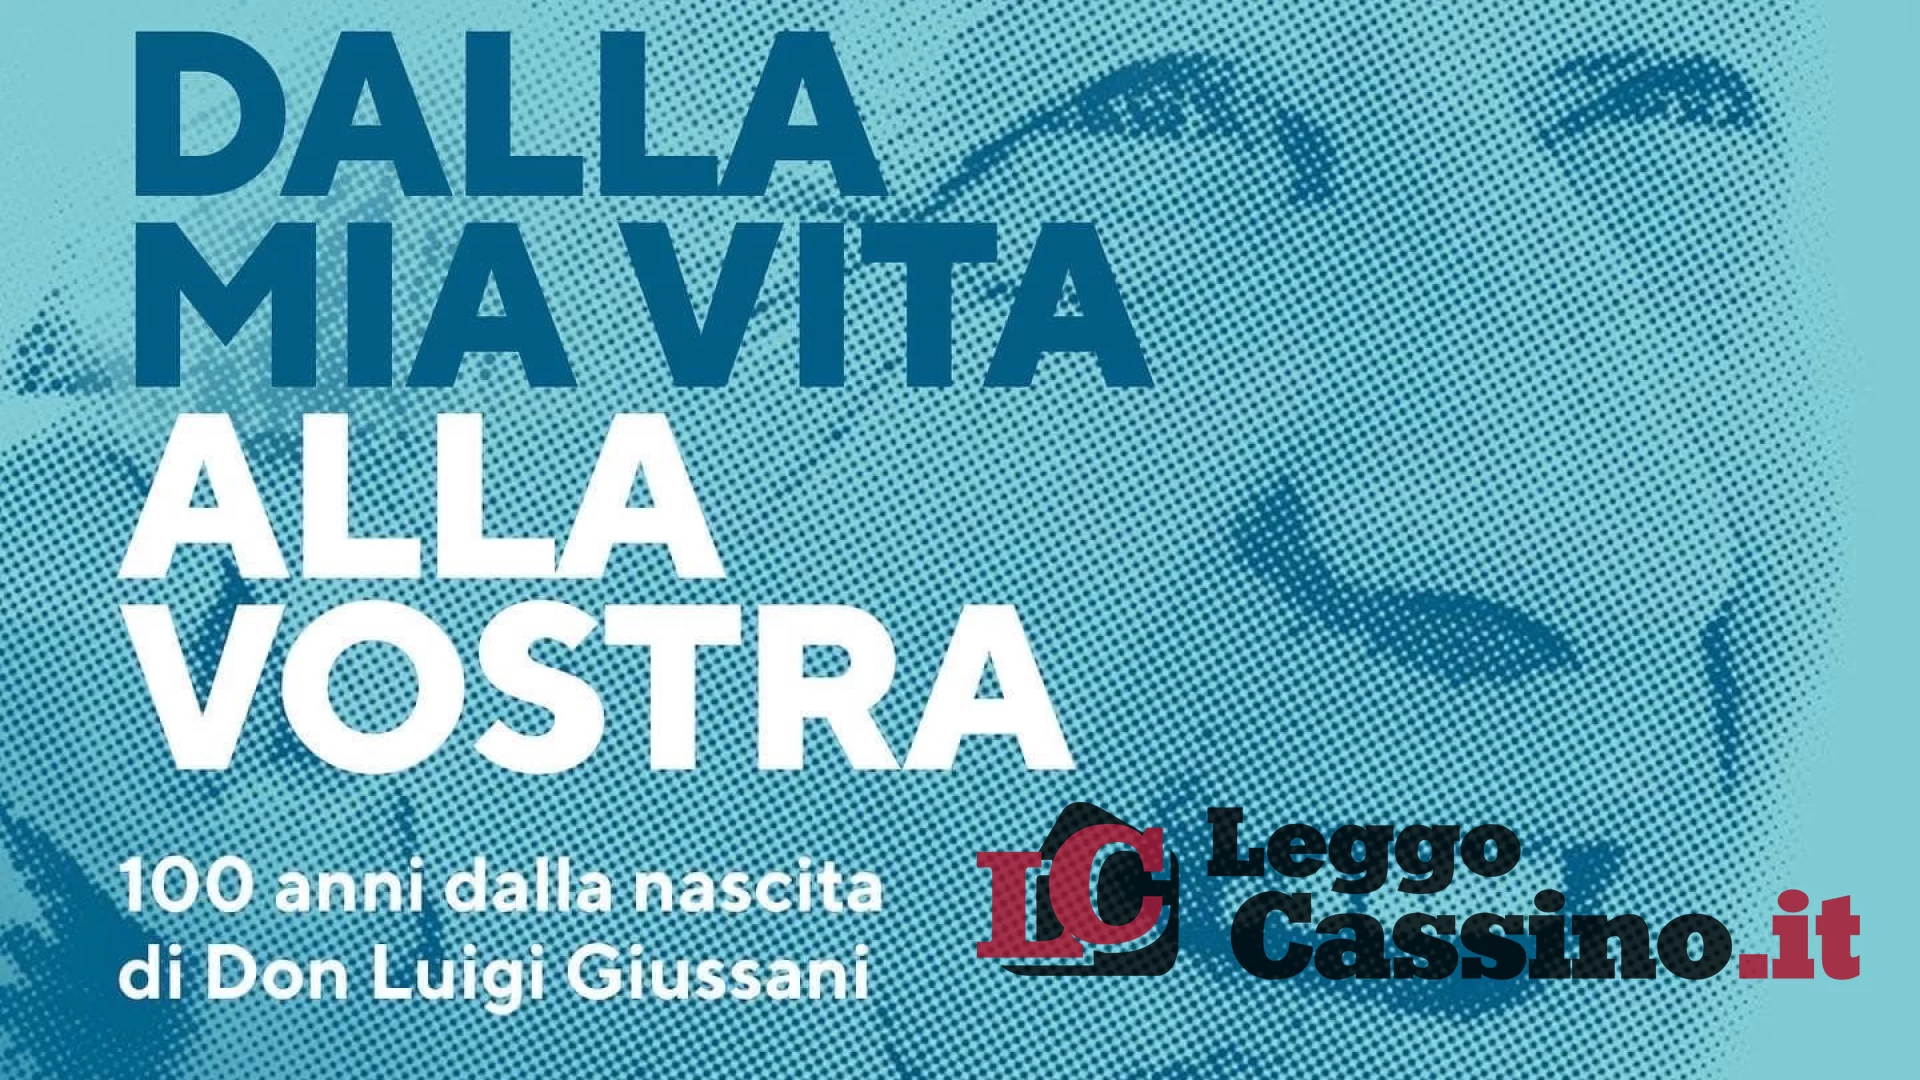 “Dalla mia vita alla vostra” a 100 anni dalla nascita di Don Luigi Giussani